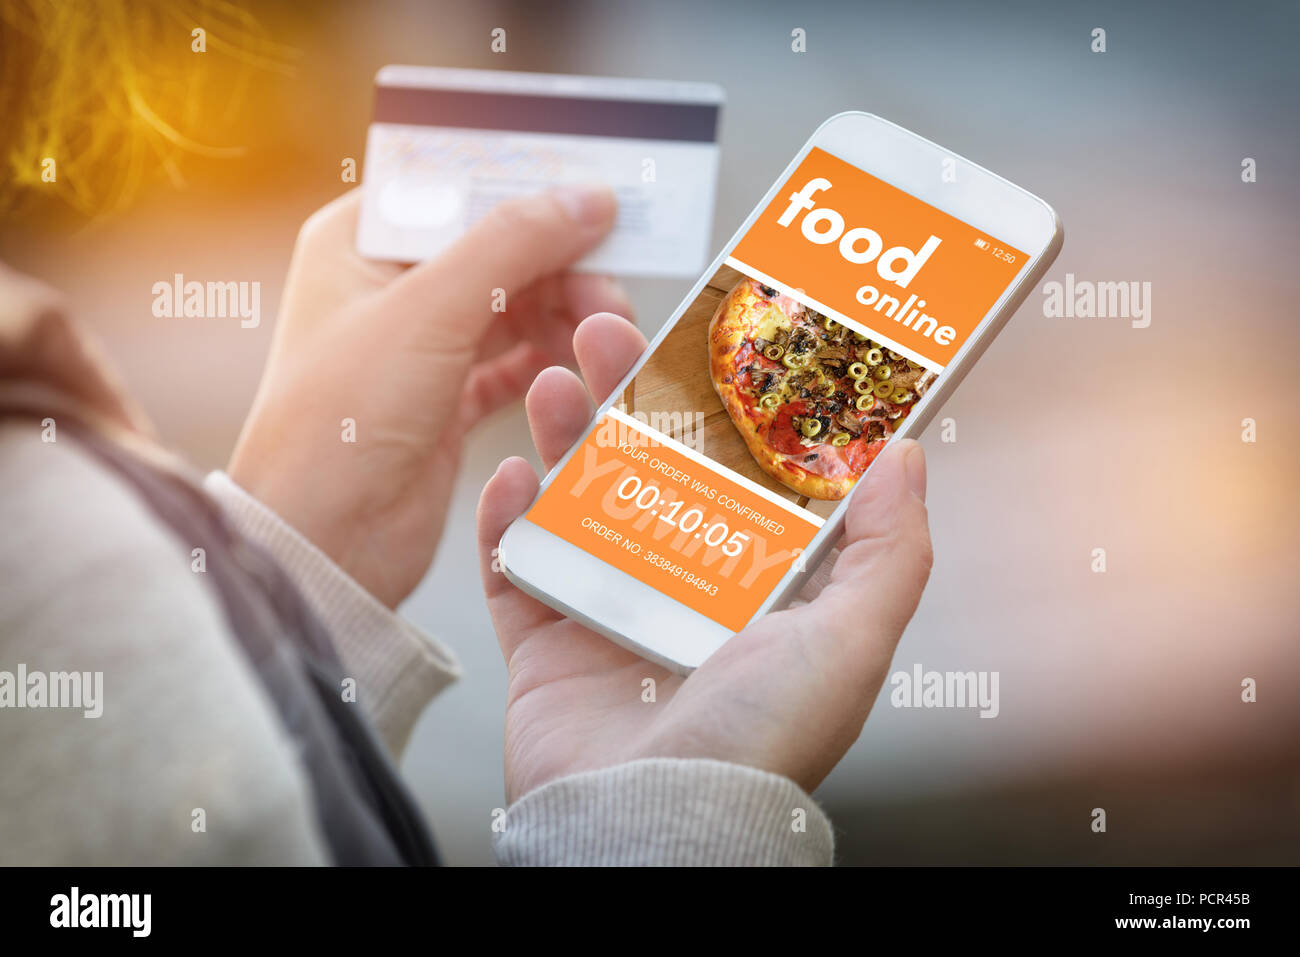 Essen bestellen online. Smartphone in der Hand und Kreditkarte in anderen. Konzept der Essen bestellen im Büro oder Arbeitsplatz. Stockfoto